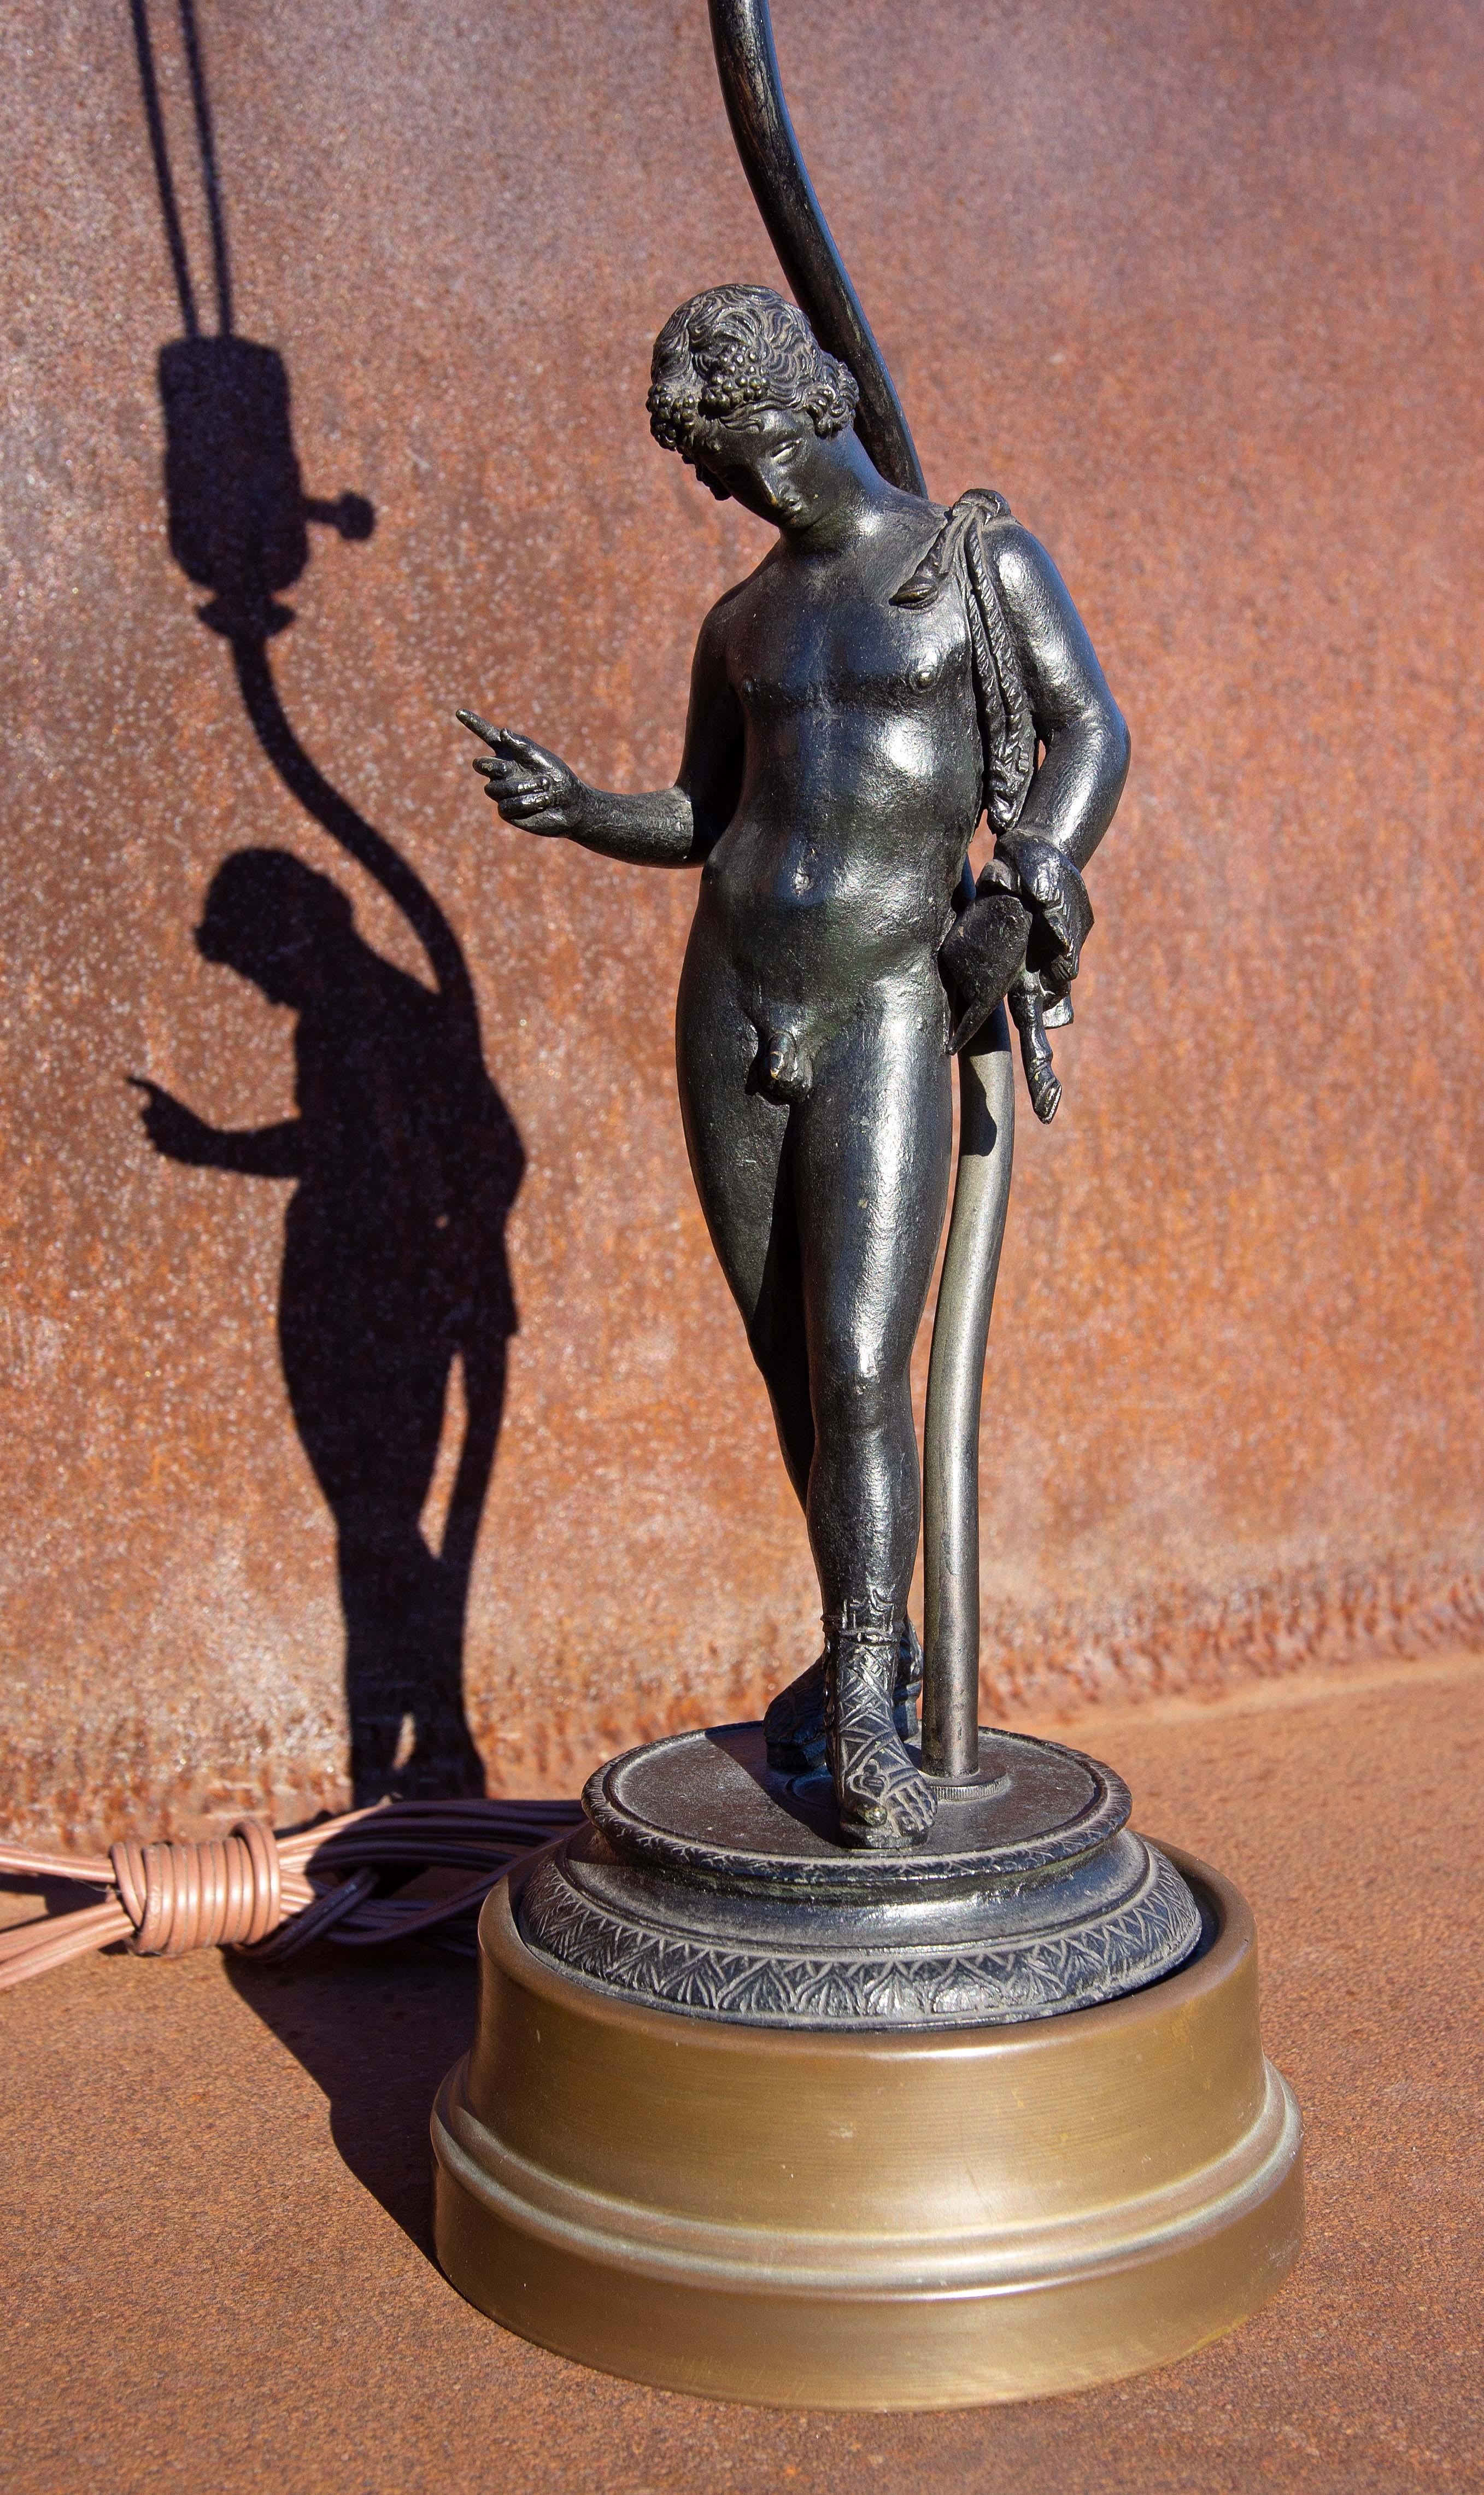 Grand Tour Bronzeskulptur des Narziss aus dem 19. Jahrhundert nach dem Original, das 1862 in Pompeji gefunden wurde. Als sie erstmals in Pompeji gefunden wurde, identifizierte man sie als Narzisse. Jahre später wurde er als Dionysos identifiziert.